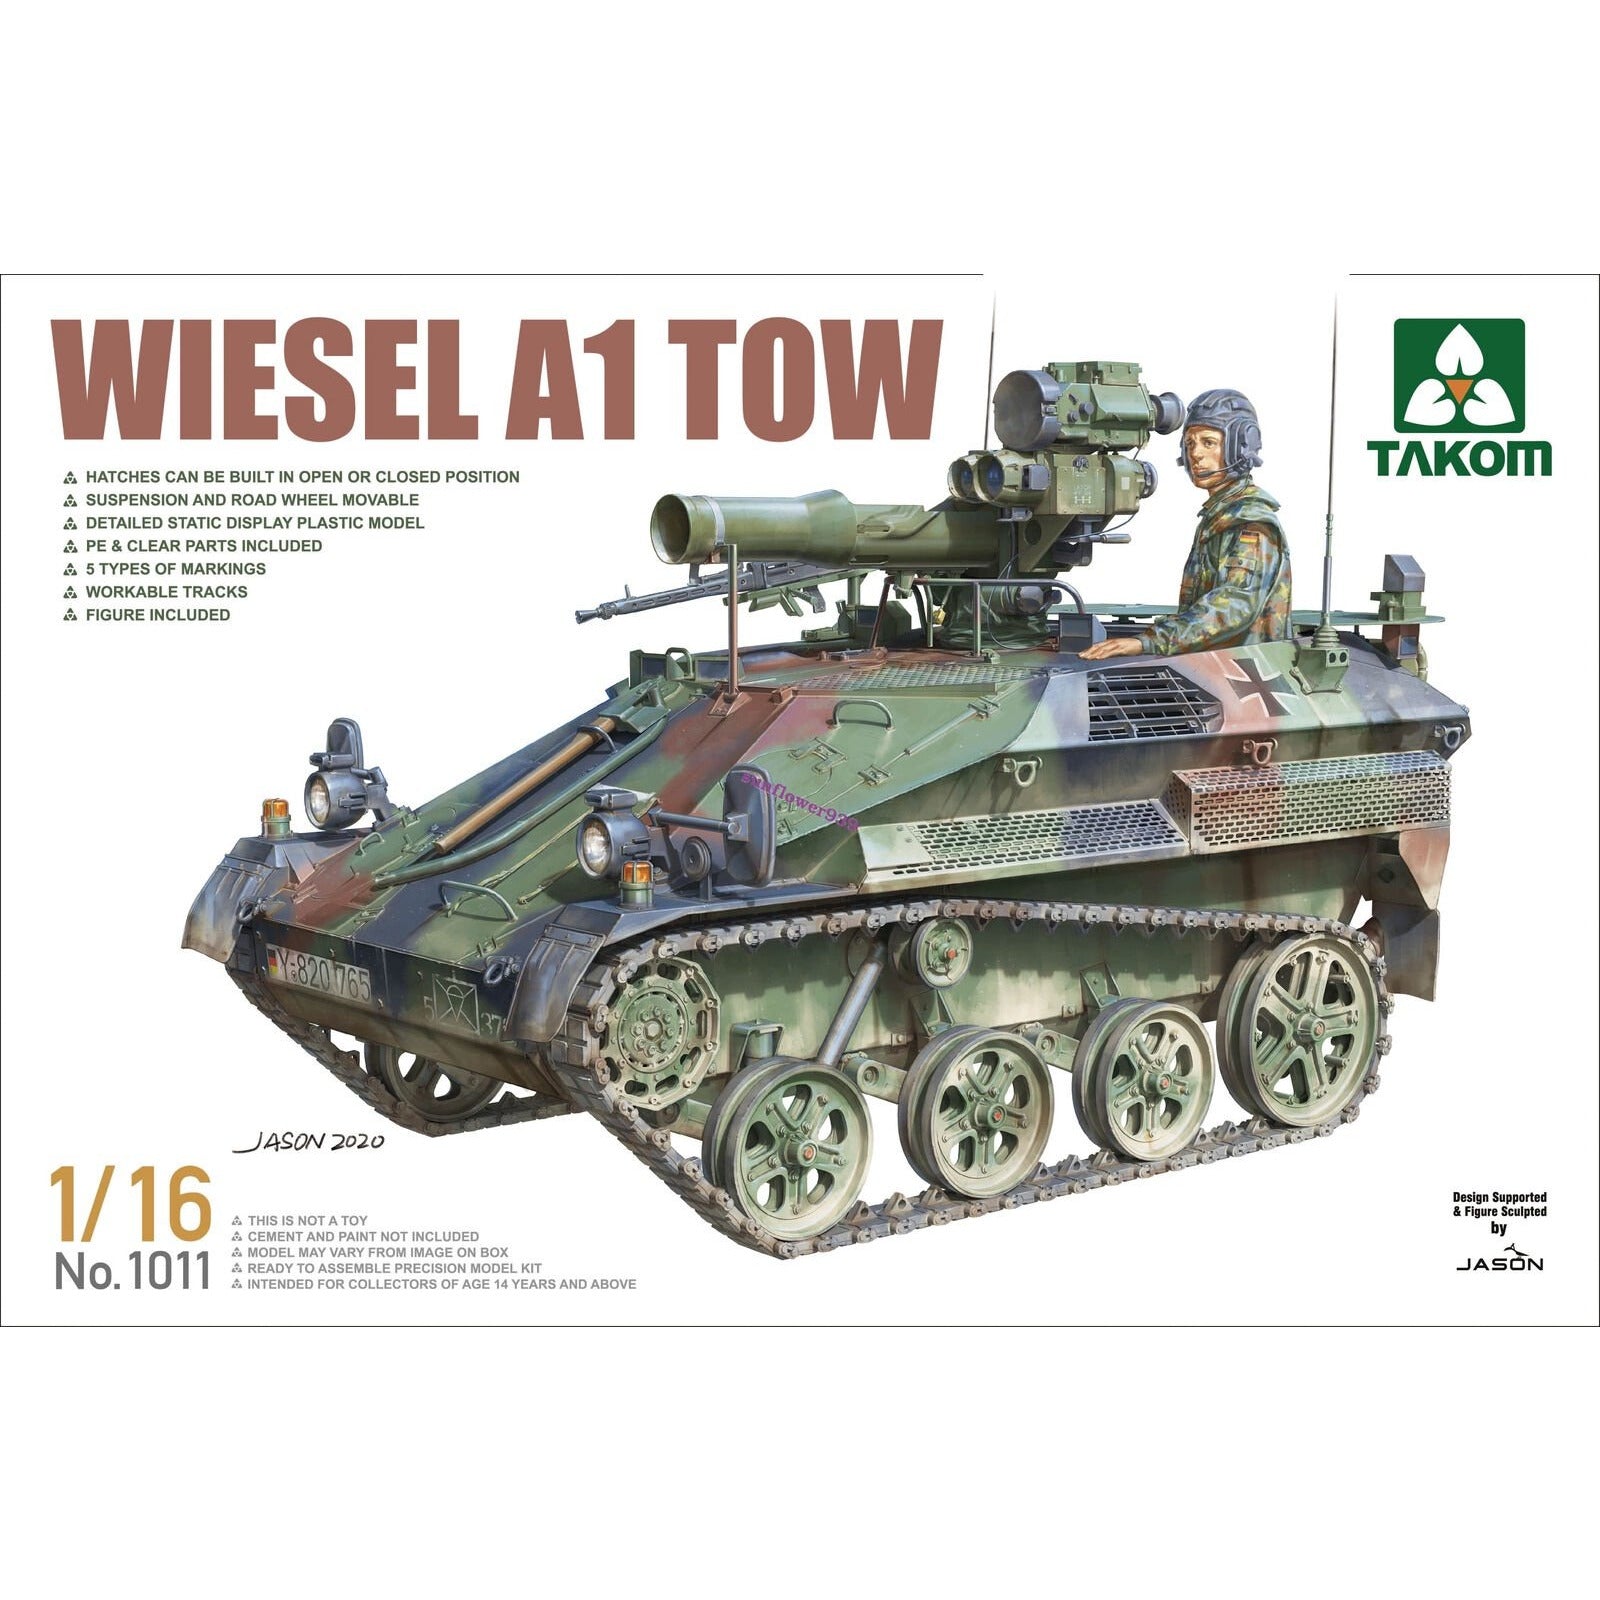 Wiesel A1 Tow 1/16 #1011 by Takom